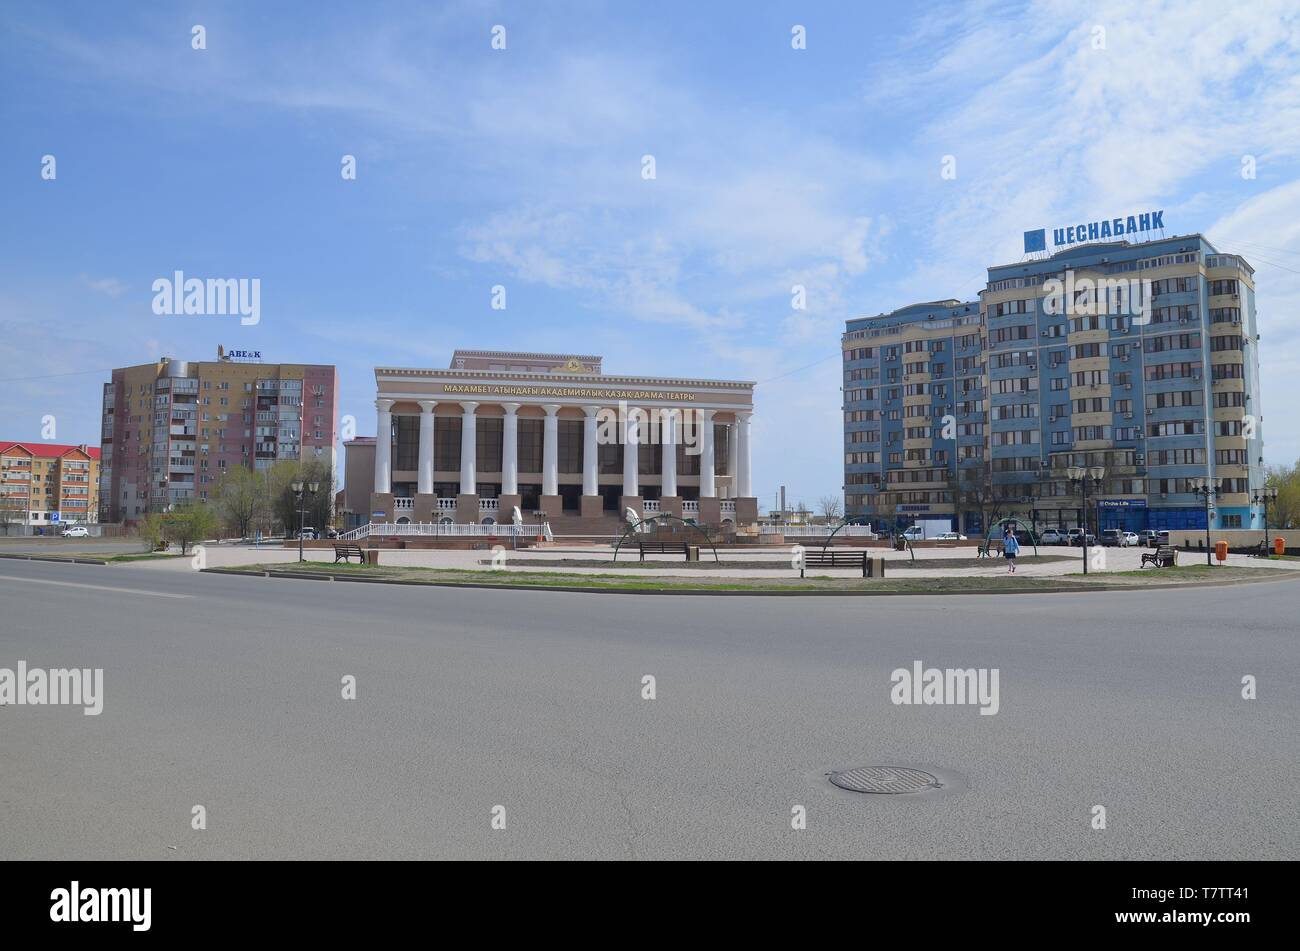 Die Stadt Atyrau in West-Kasachstan, am Ural, der Grenze zwischen Europa und Asien: das Theatre Foto Stock